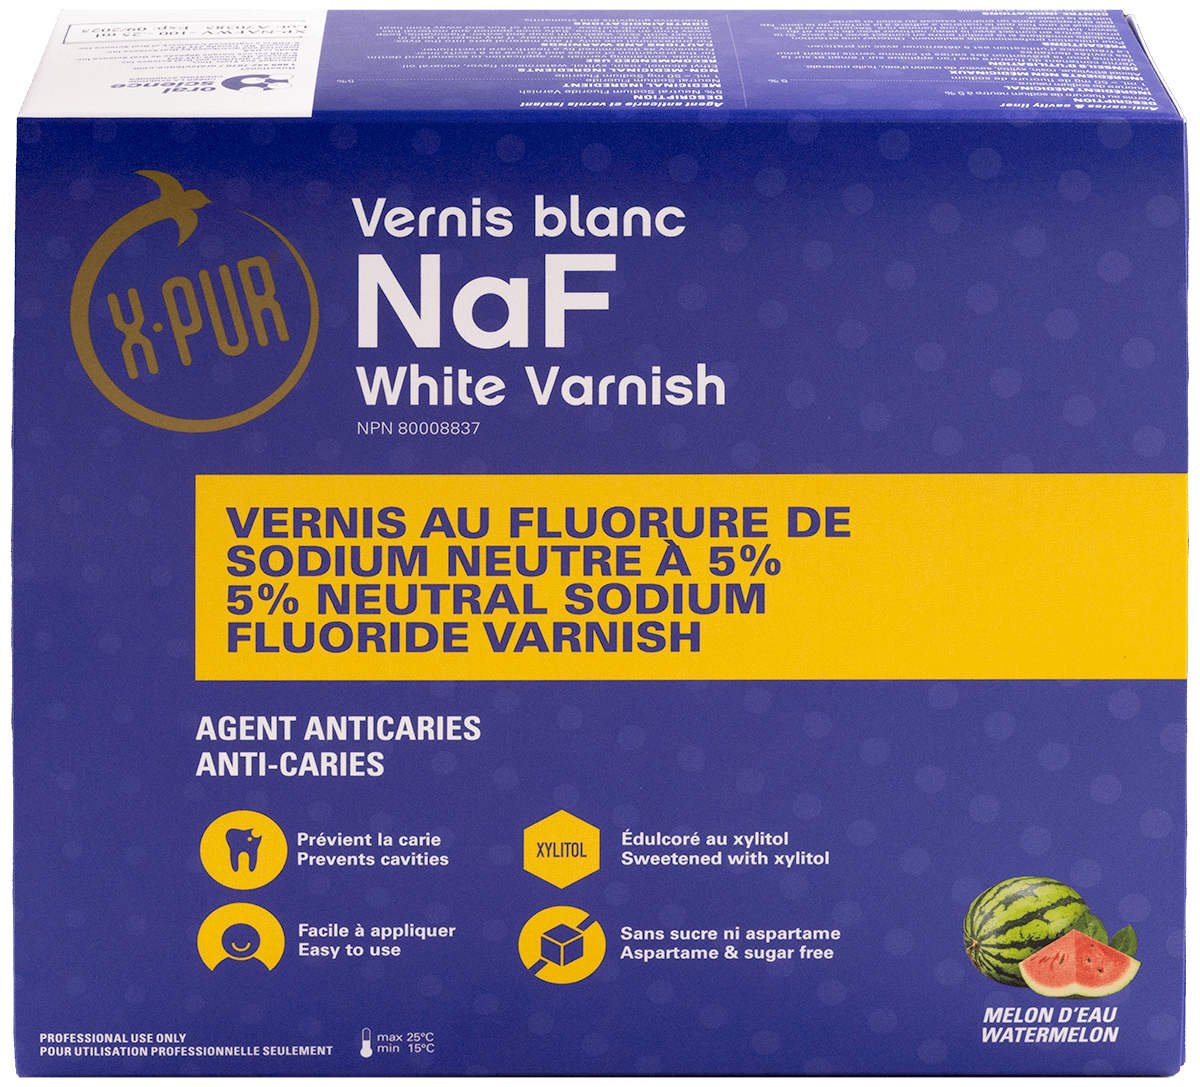 X-PUR NaF White Varnish